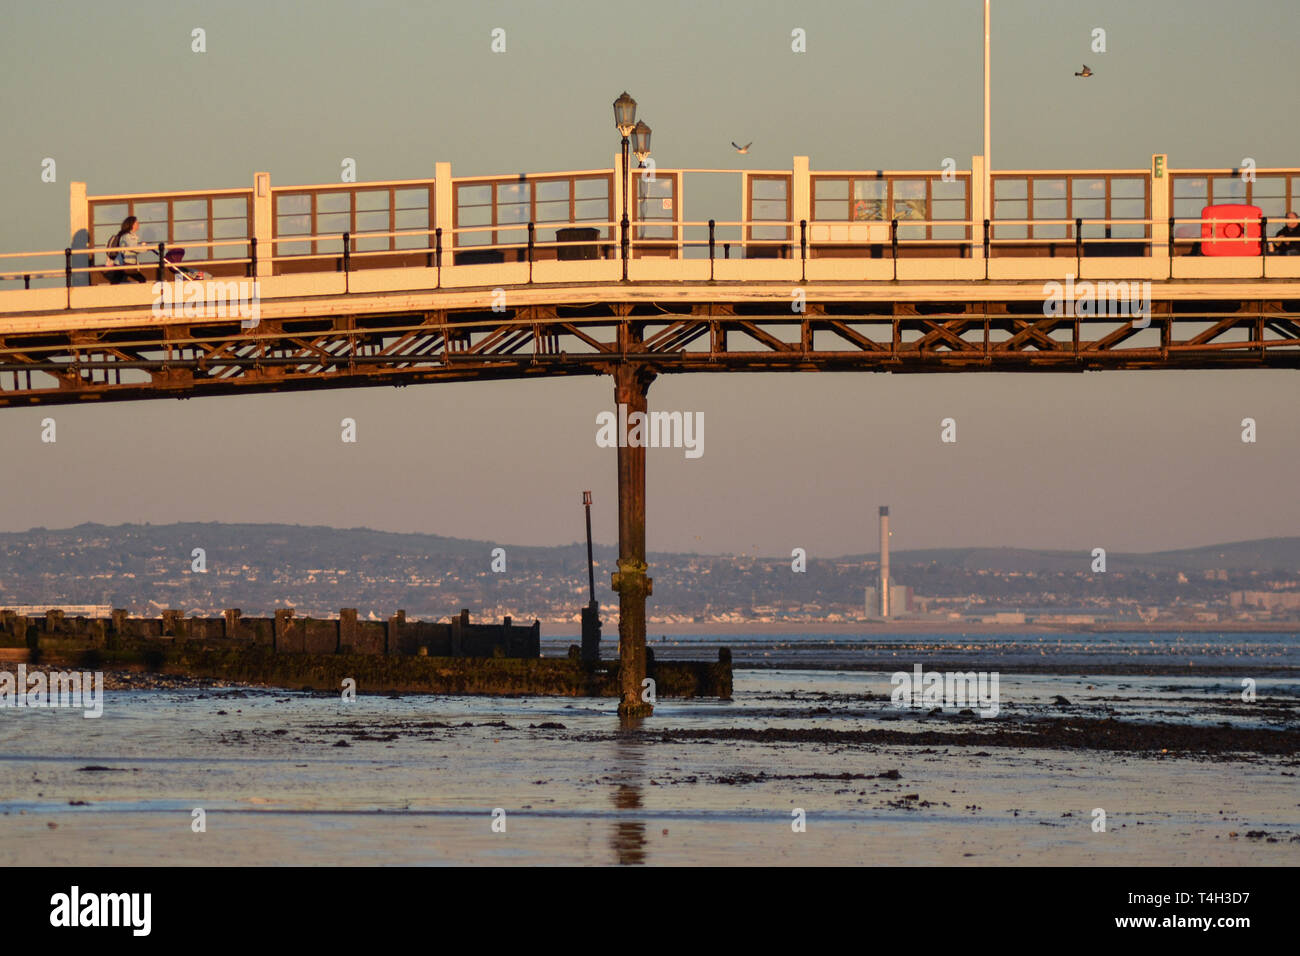 Looking under Worthing pier towards shoreham, UK Stock Photo